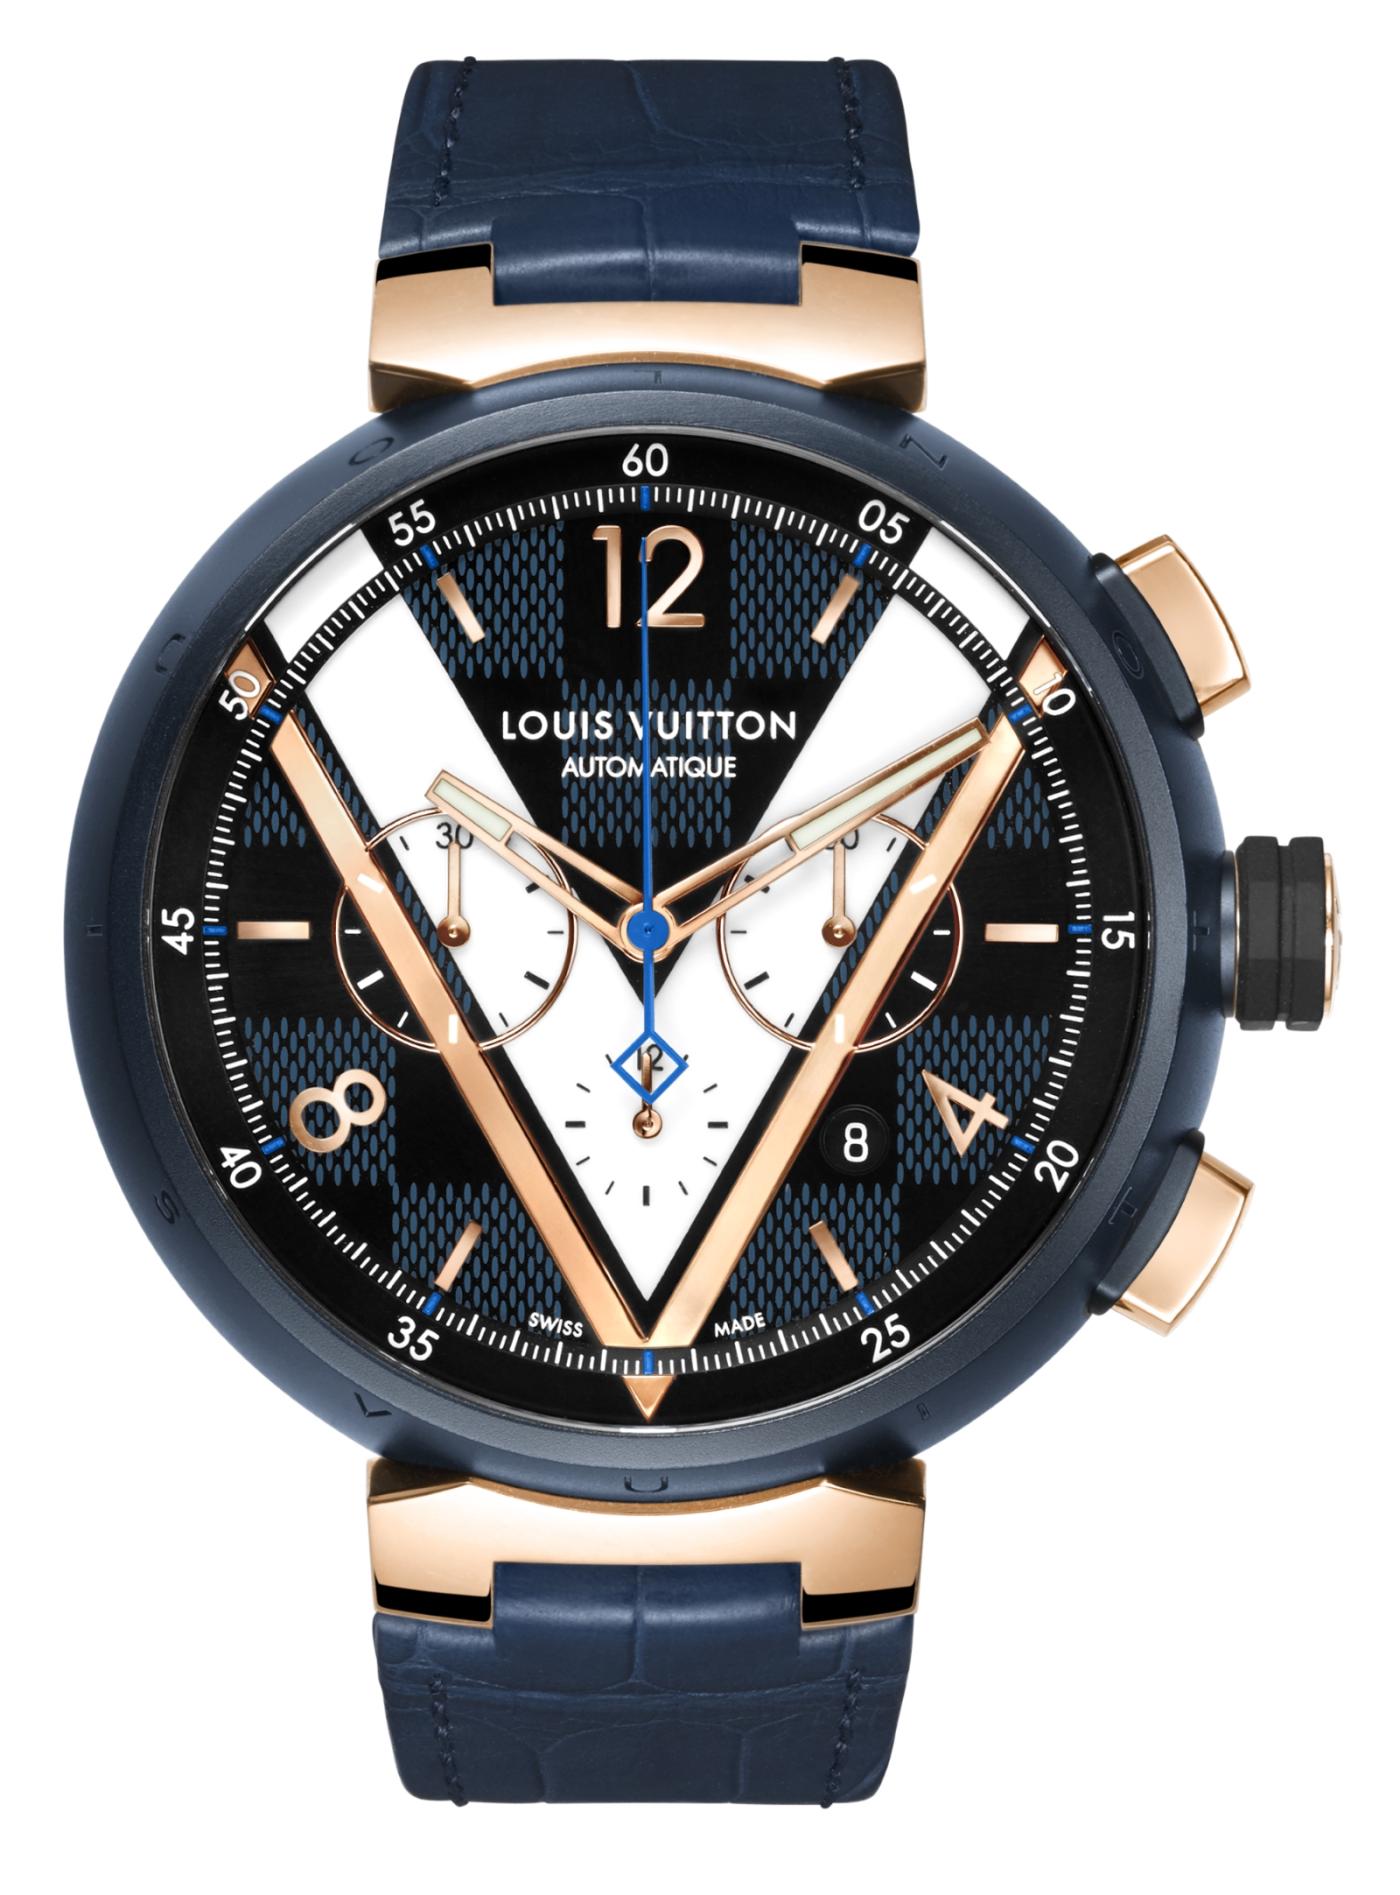 Louis Vuitton launches Tambour Damier Cobalt Chronograph